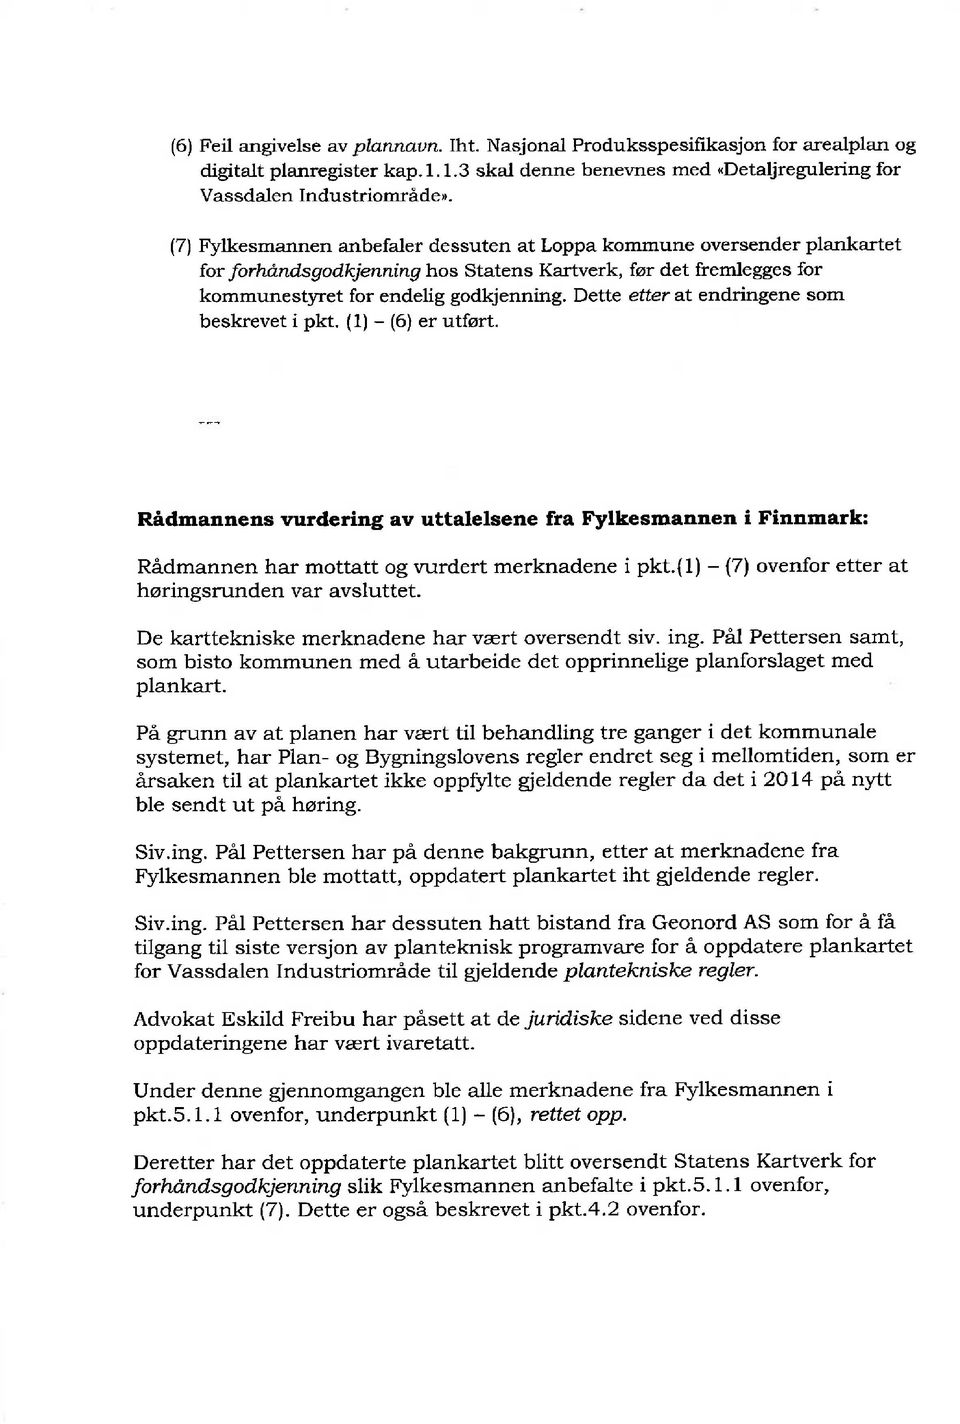 Dette etter at endringene som beskrevet i pkt. (1) - (6) er utført. Rådmannens vurdering av uttalelsene fra Fylkesmannen i Finnmark: Rådmannen har mottatt og vurdert merknadene i pkt.